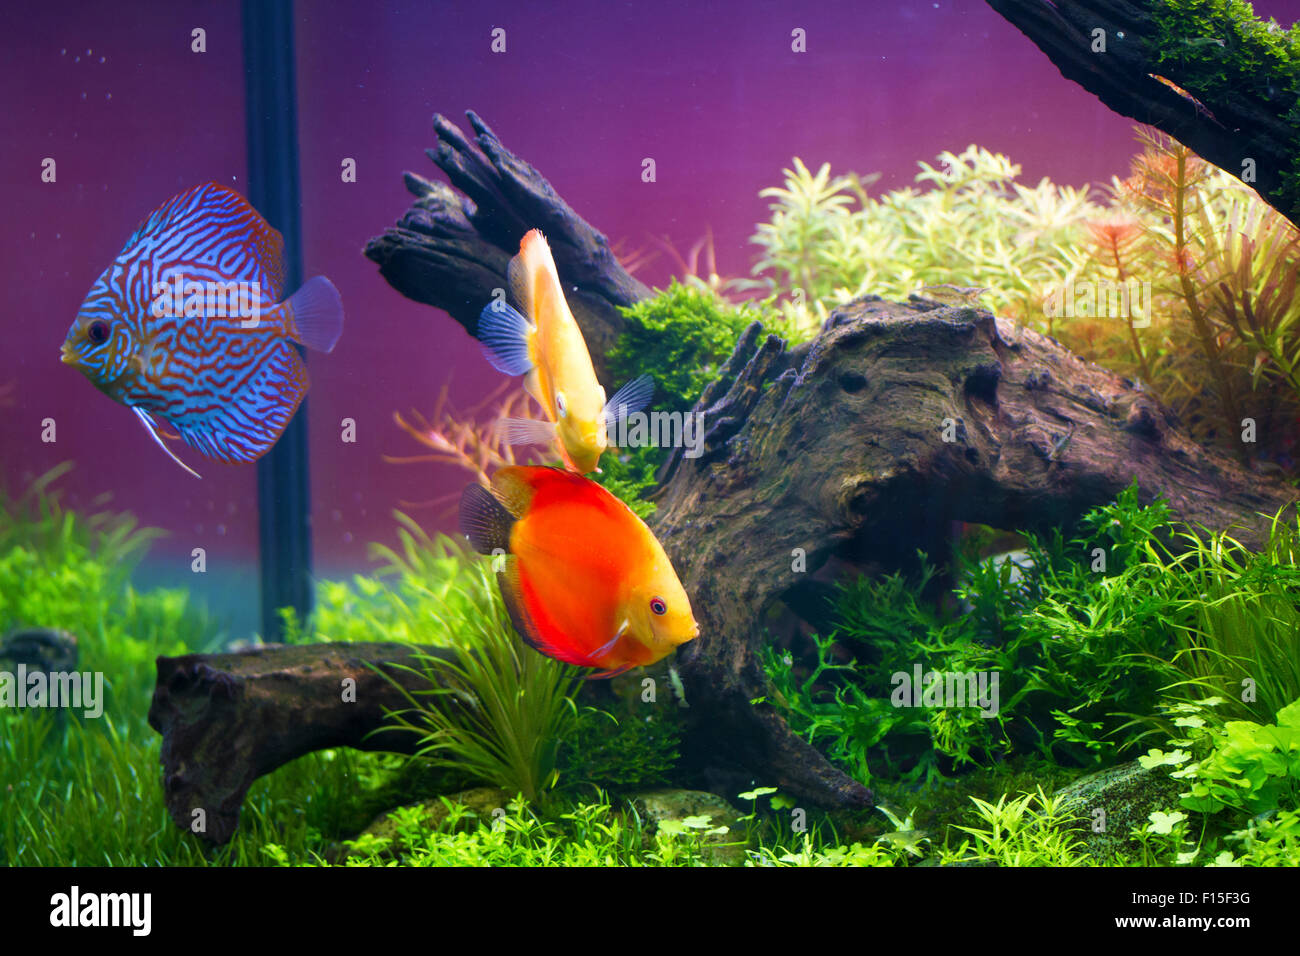 Discus fish swimming in aquarium tank,Symphysodon aequifasciatus Stock Photo